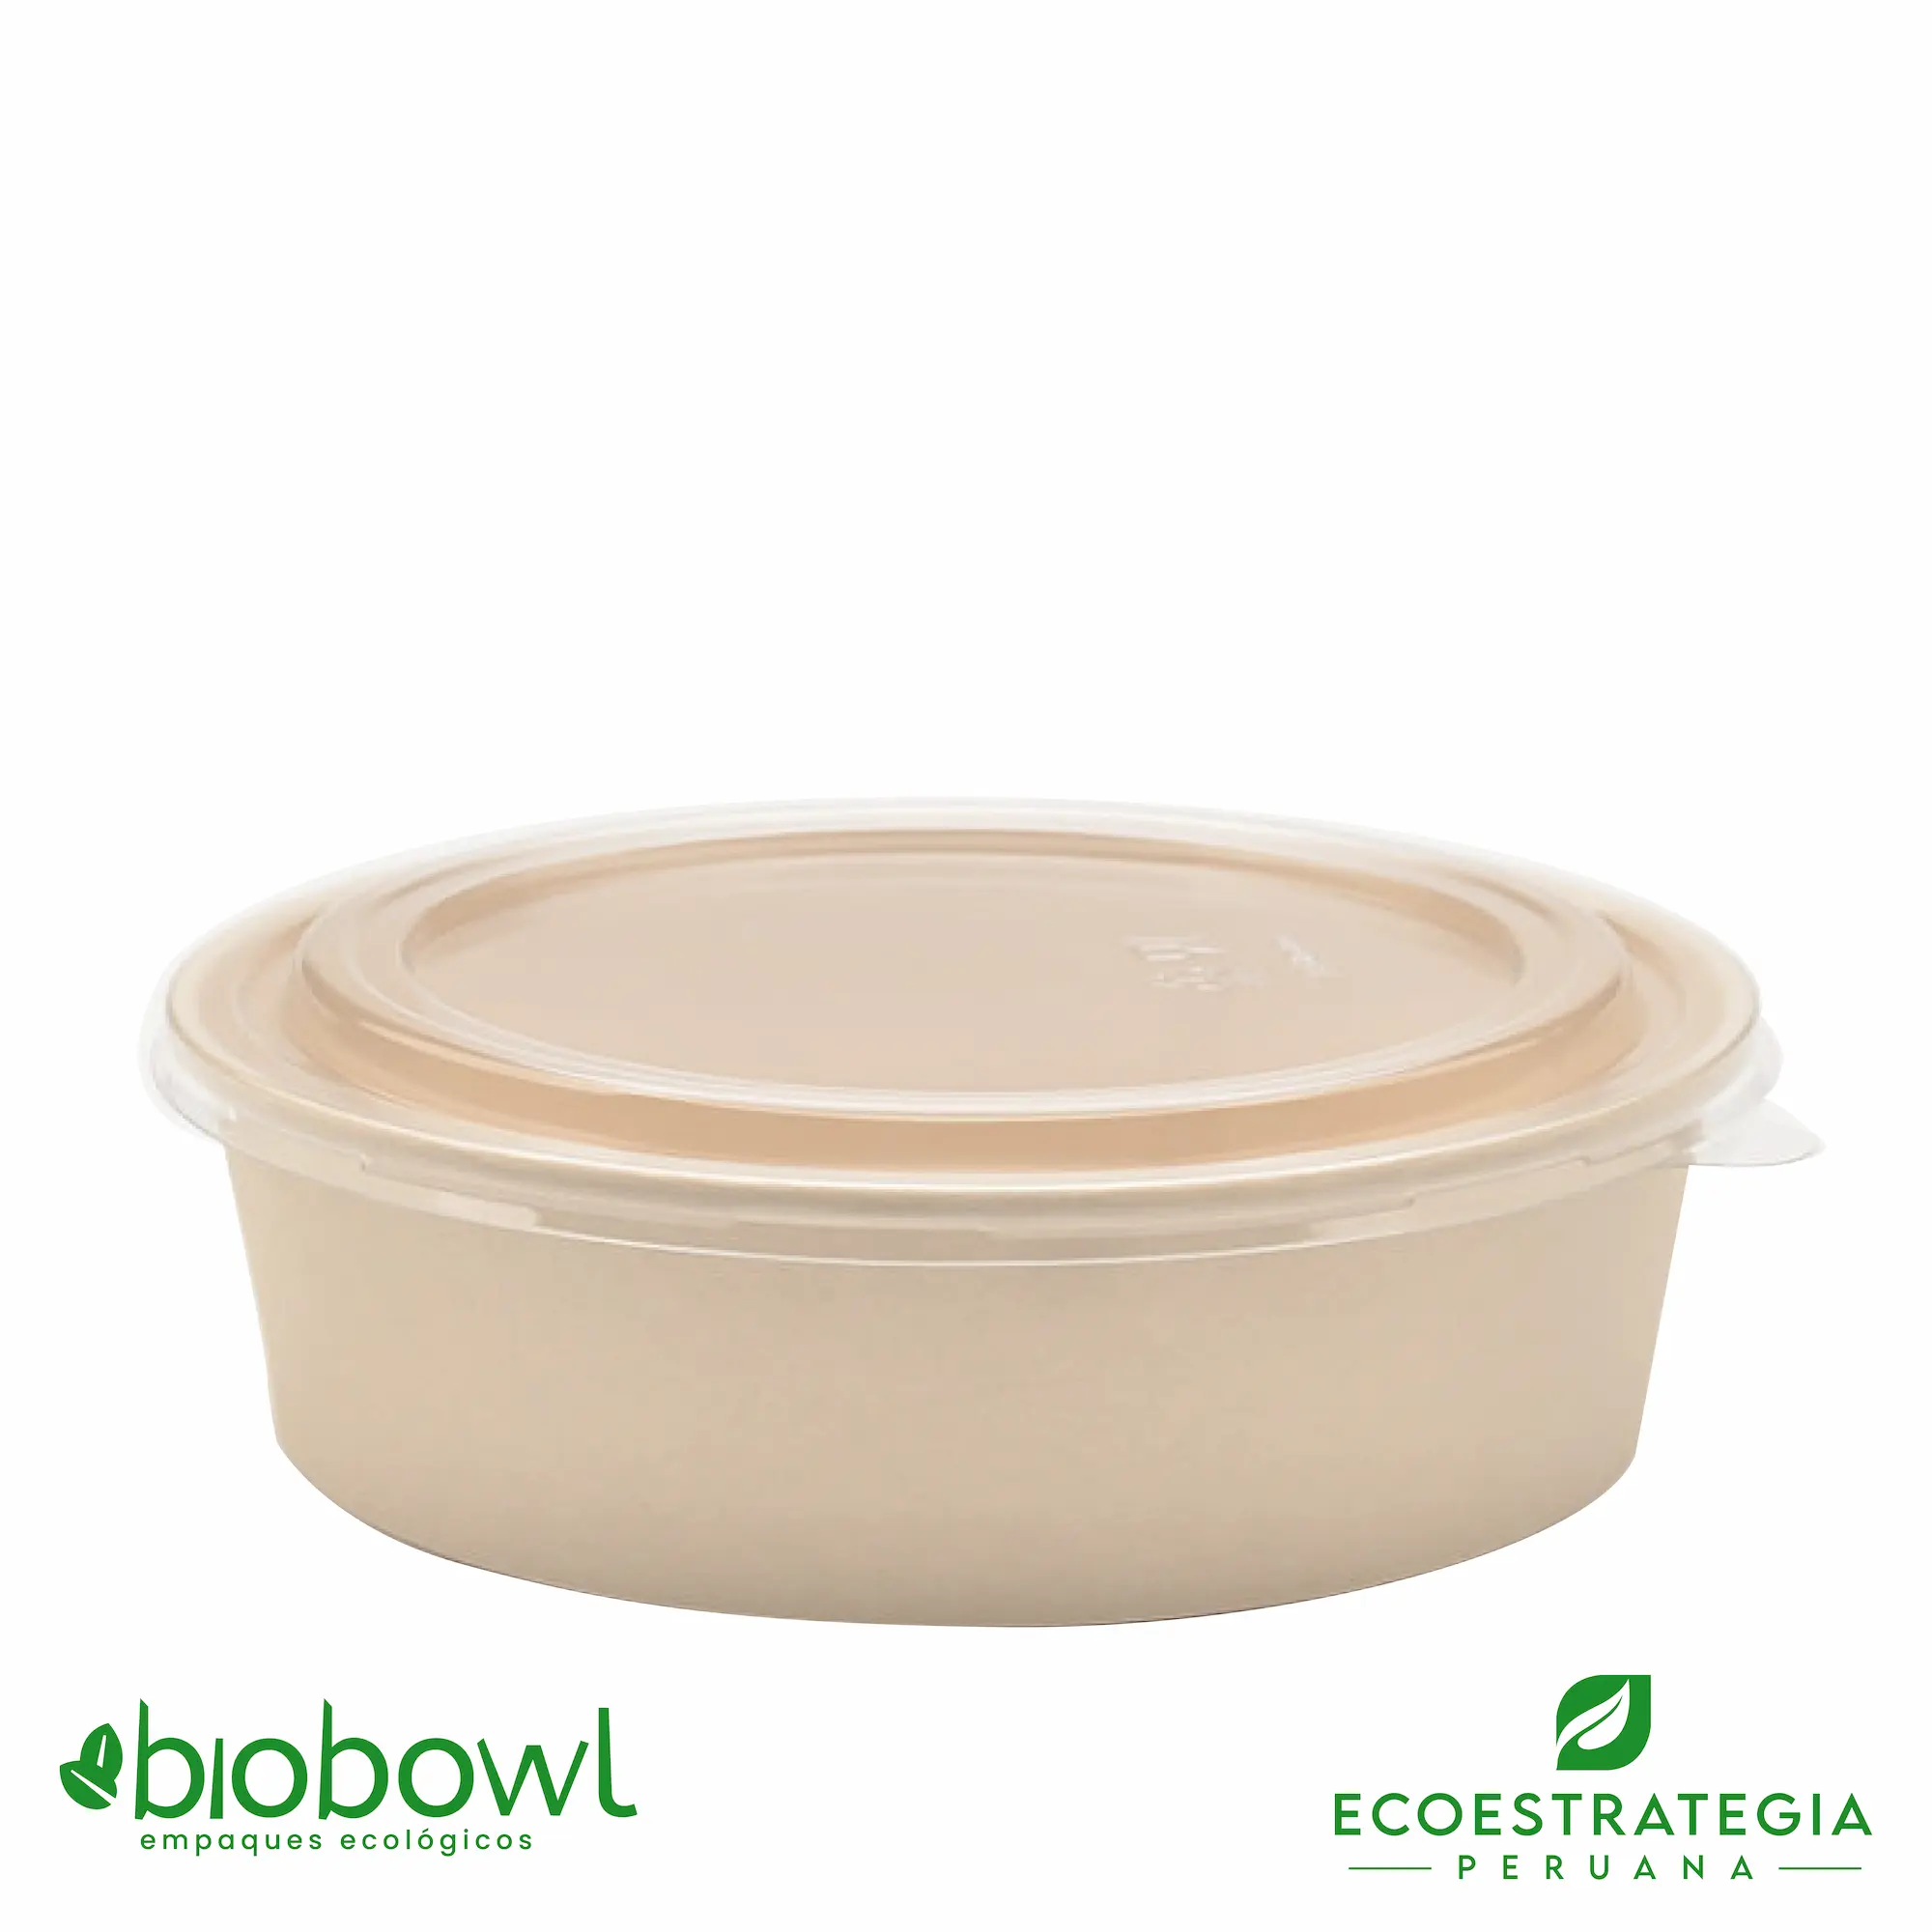 El bowl bambú biodegradable de 750ml o EP-750, es también conocido como bowl bamboo 750ml, bambú sopero 750ml, bambú salad 750ml, bowl para ensalada con tapa pet 750ml o sopero con fibra de bambú 750ml, bowl bambú ecologico, bowl bambú reciclable, bowl descartable, bowl bambu postres 750ml, bowl bambu helados 750ml